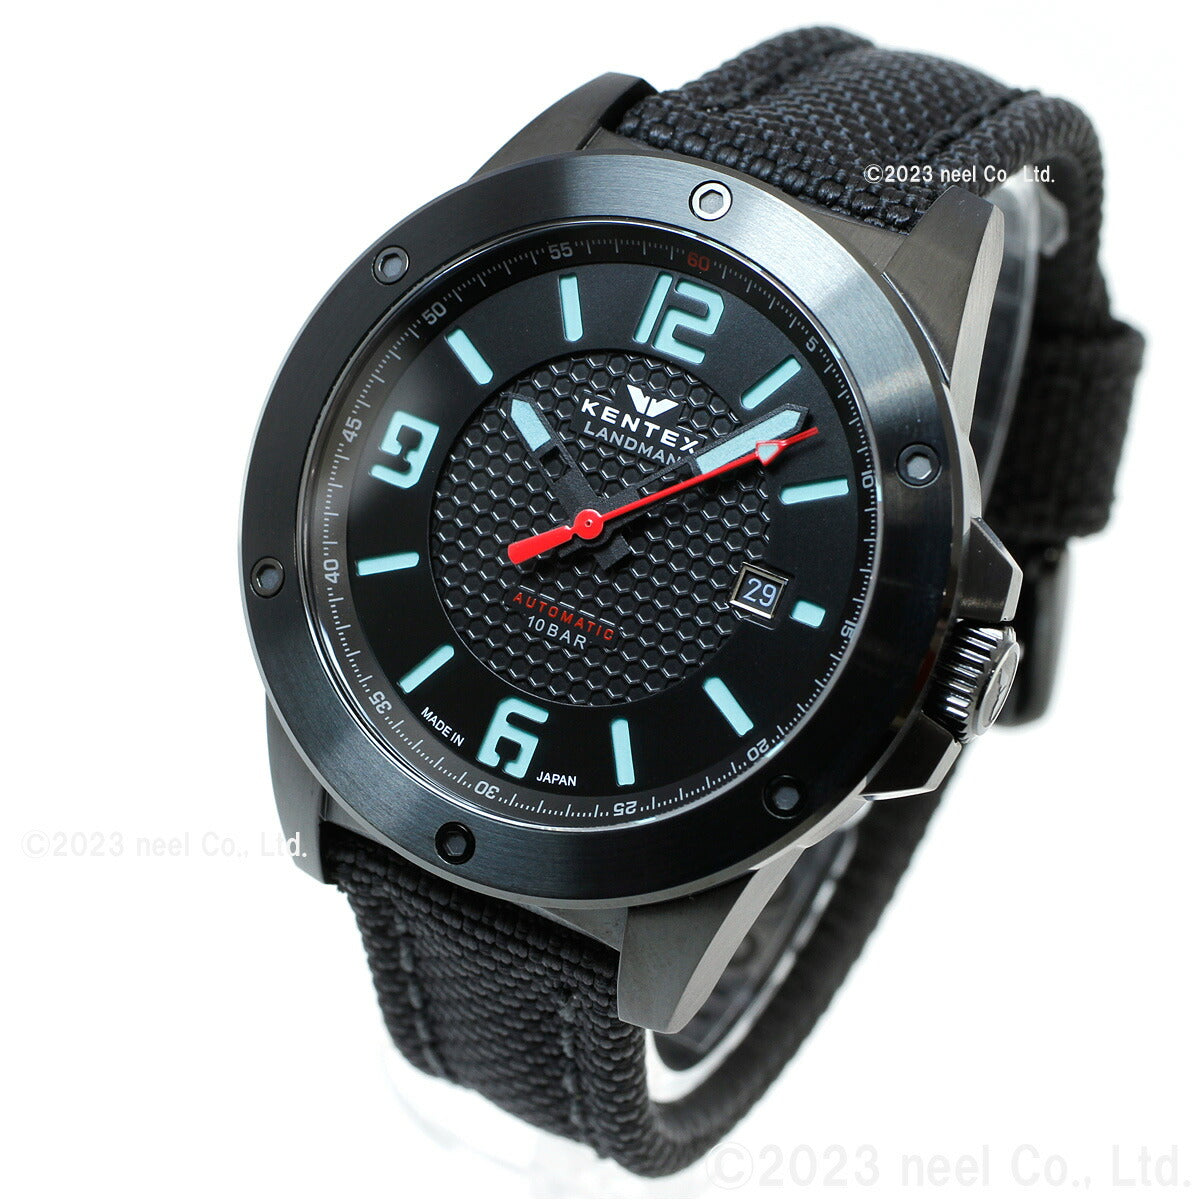 ケンテックス KENTEX 限定モデル 腕時計 時計 メンズ ランドマン アドベンチャー デイト 日本製 S763X-1